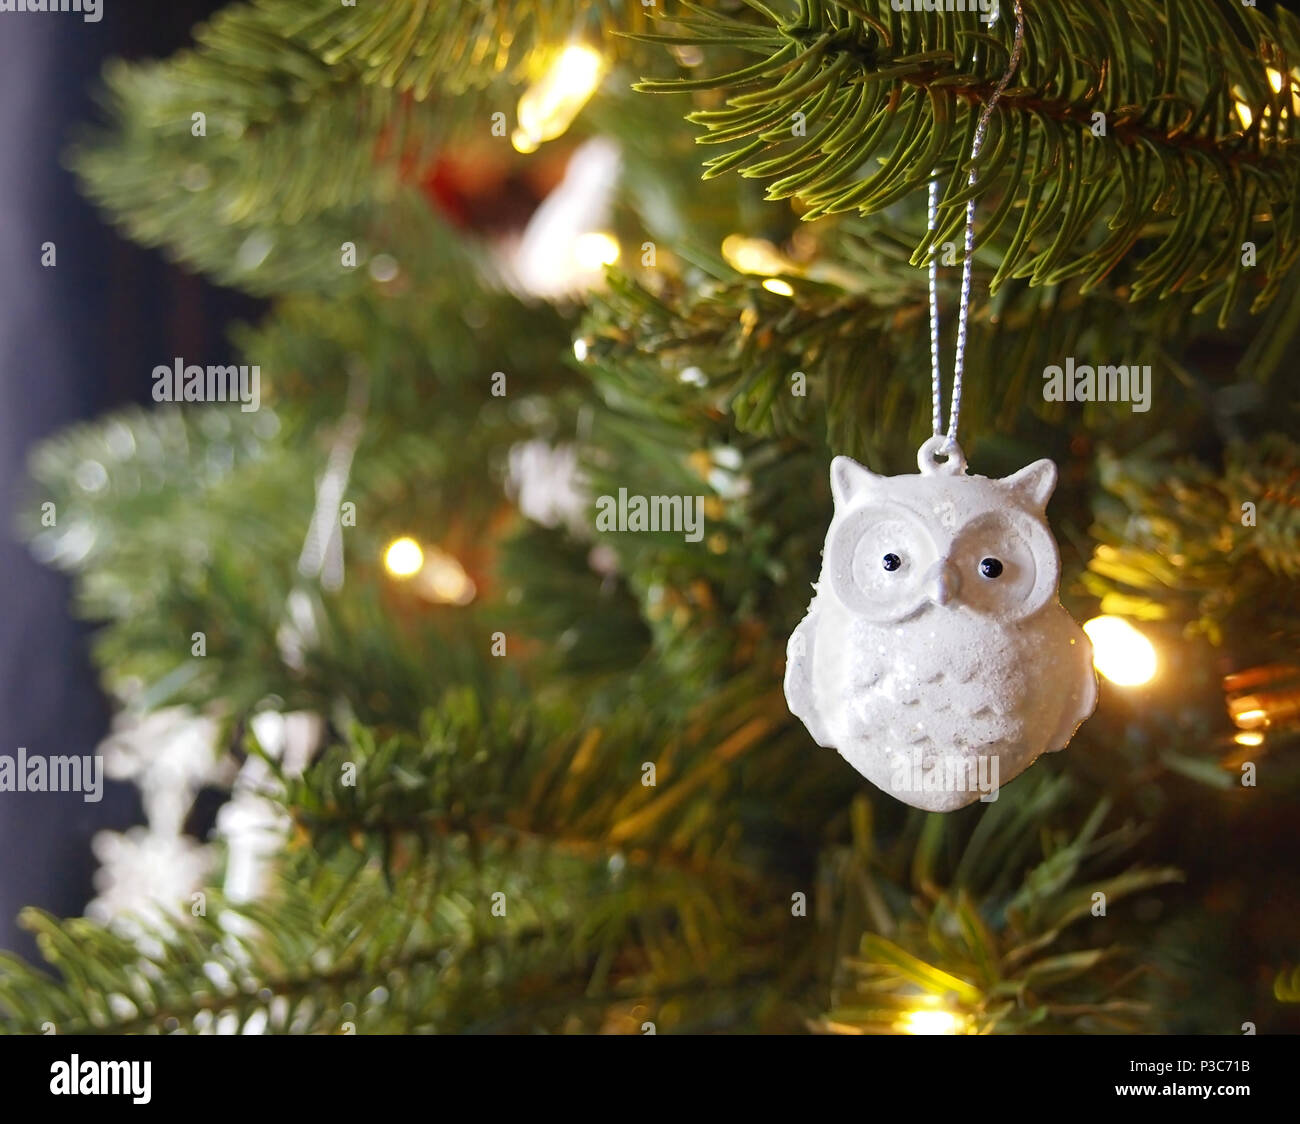 Un hibou en céramique blanc brillant ornement d'arbre de Noël avec des paillettes est suspendu à une branche d'un arbre de Noël avec des lumières d'or brillant. Banque D'Images